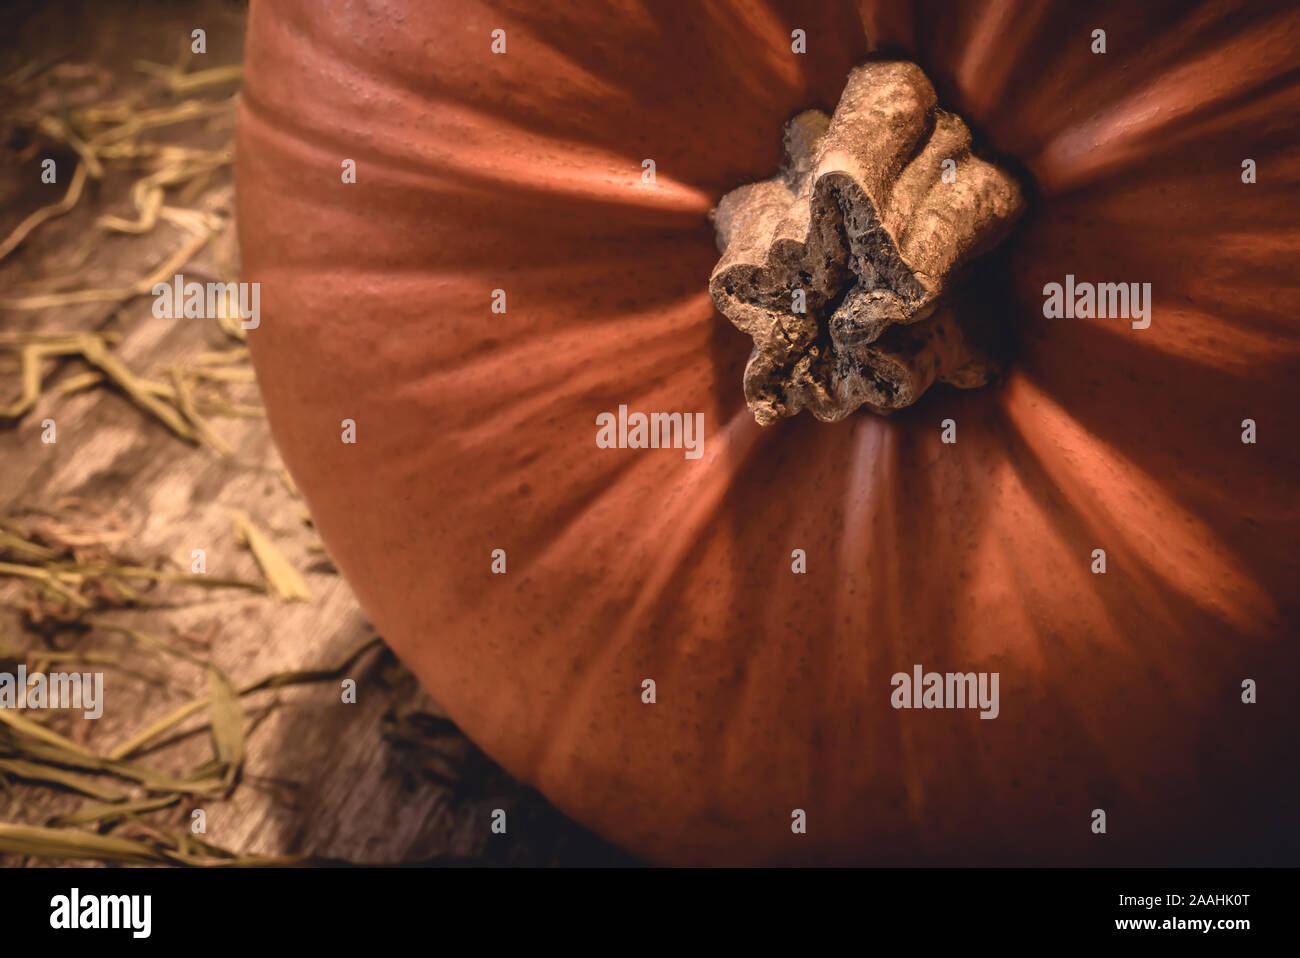 Gros plan du big orange citrouille saison automne avec tige en bois naturel sur les régions rurales et du foin dans la campagne -Concept de fête Halloween traditionnelle Banque D'Images